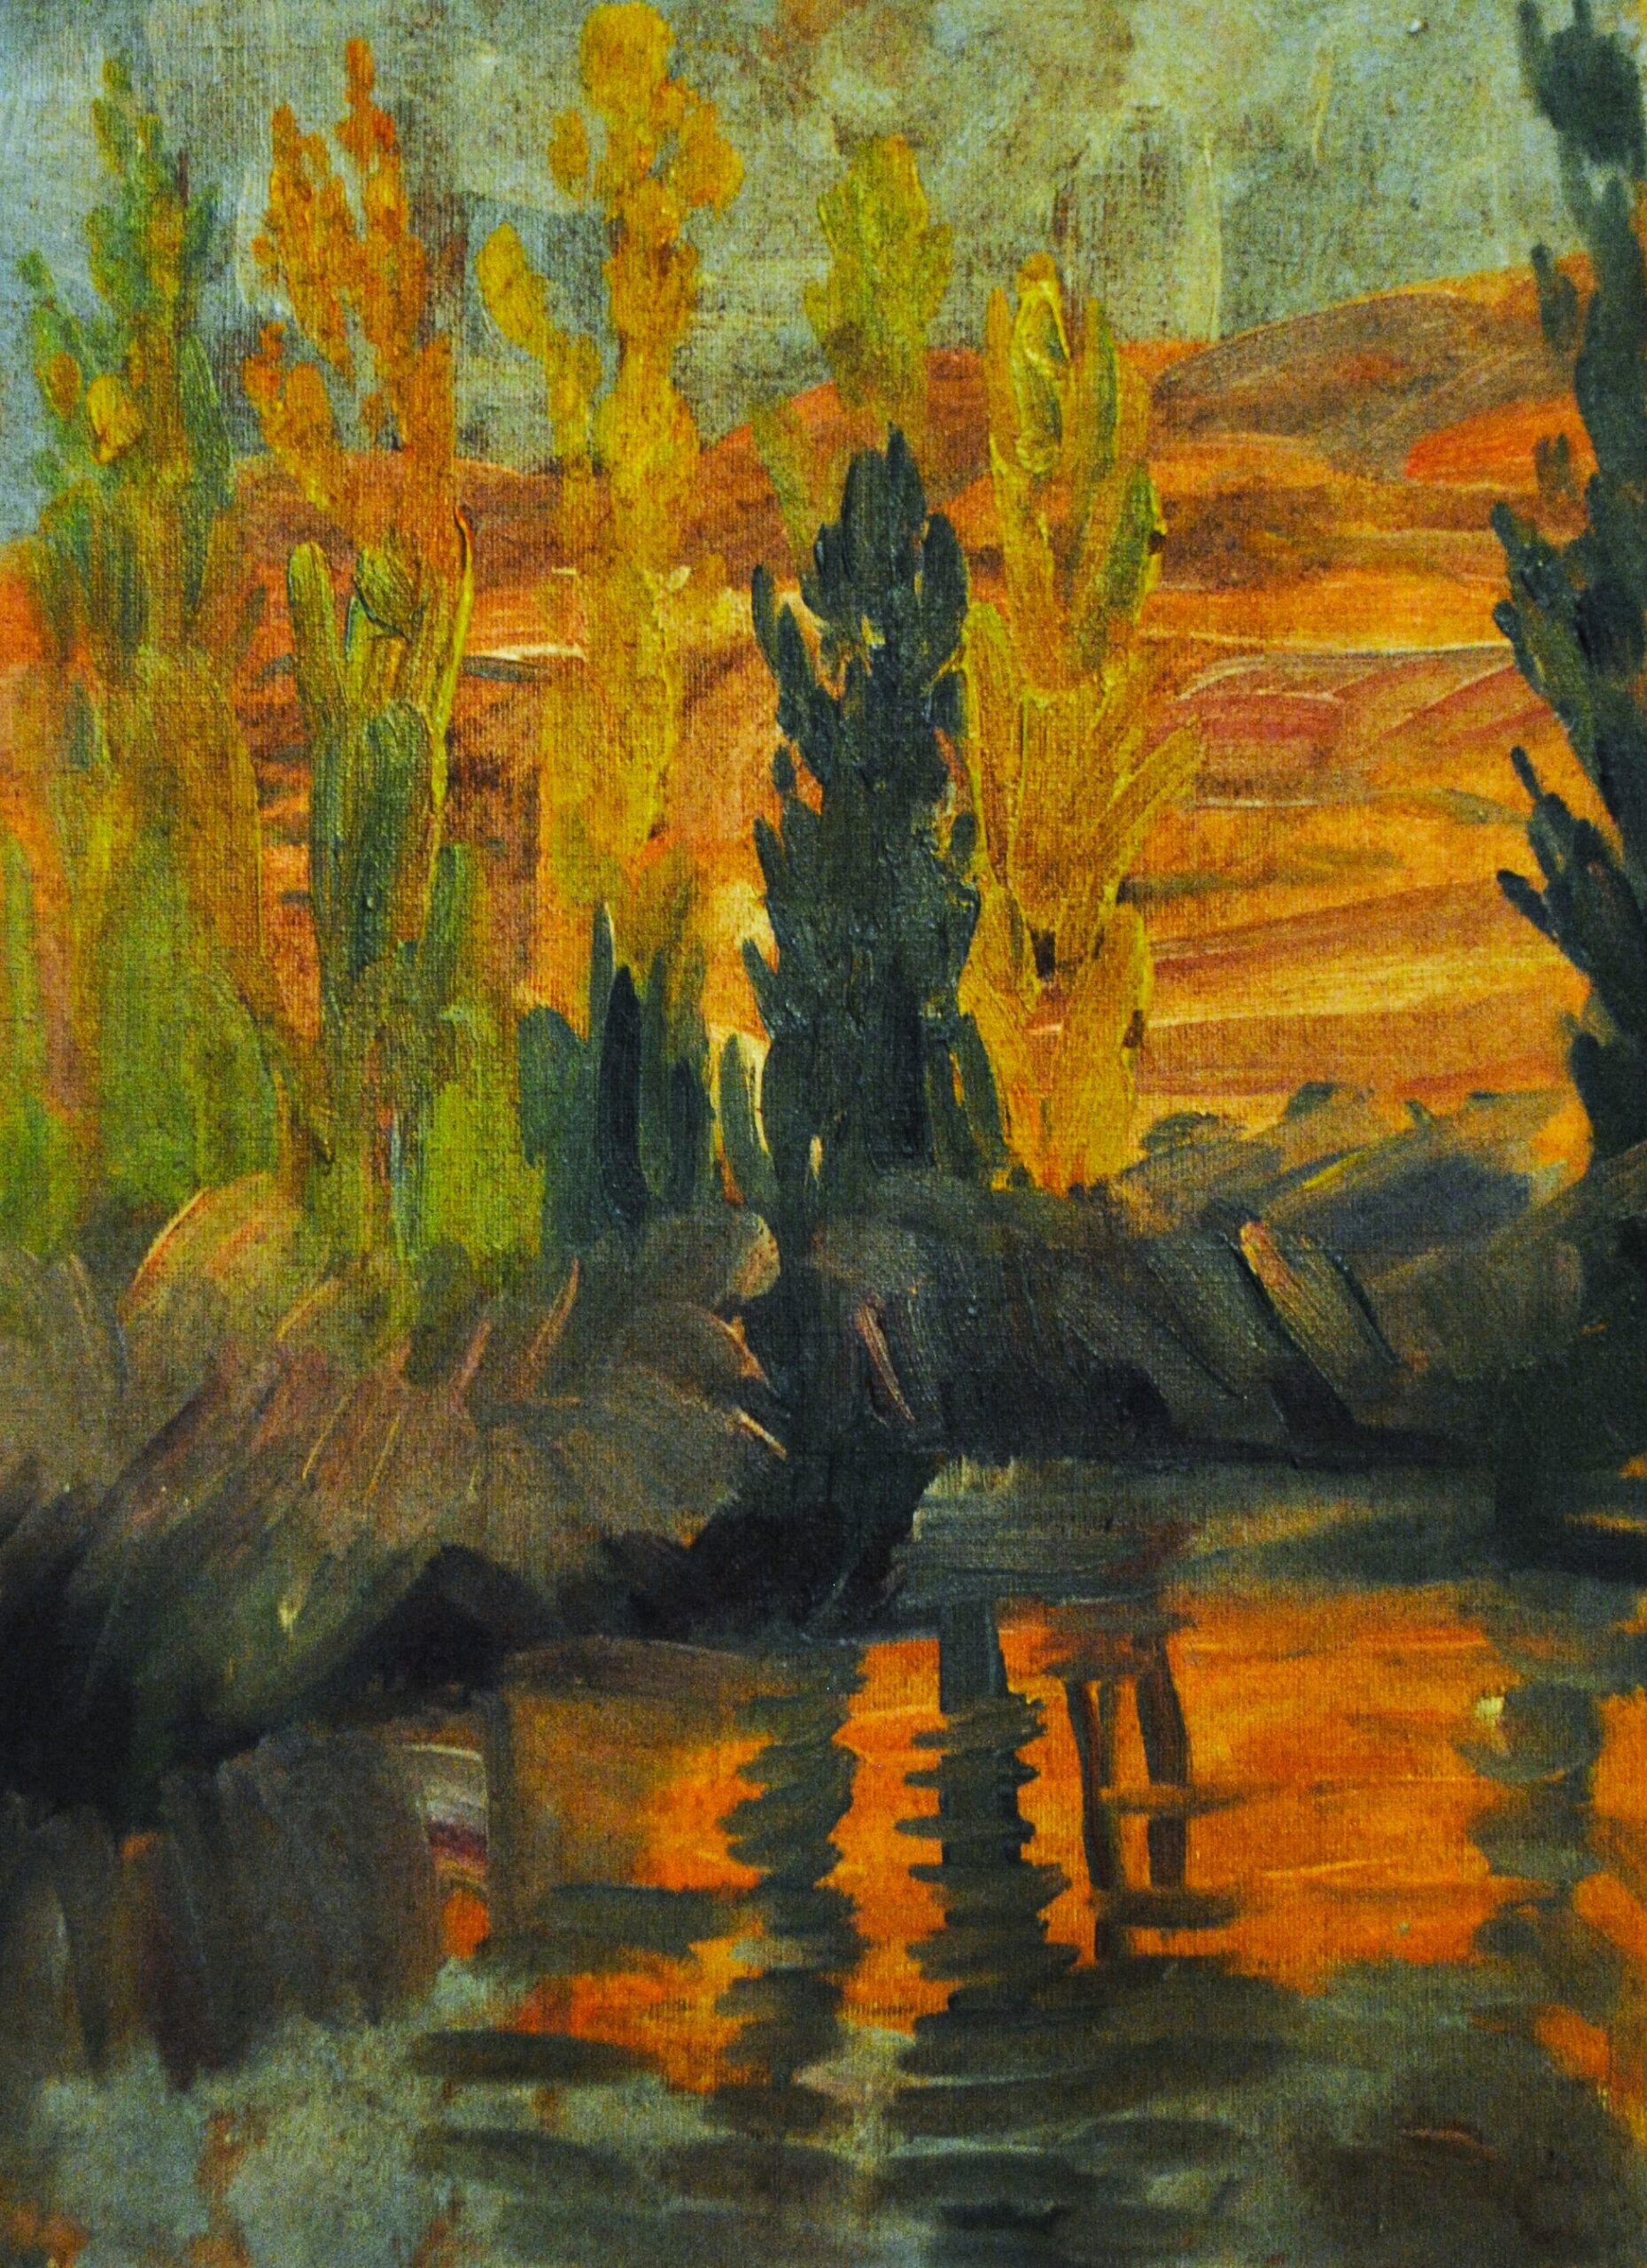 Pintura de José Manaut titulada Reflejos de otoño , Valencia (alrededores), 1917. Óleo sobre lienzo.